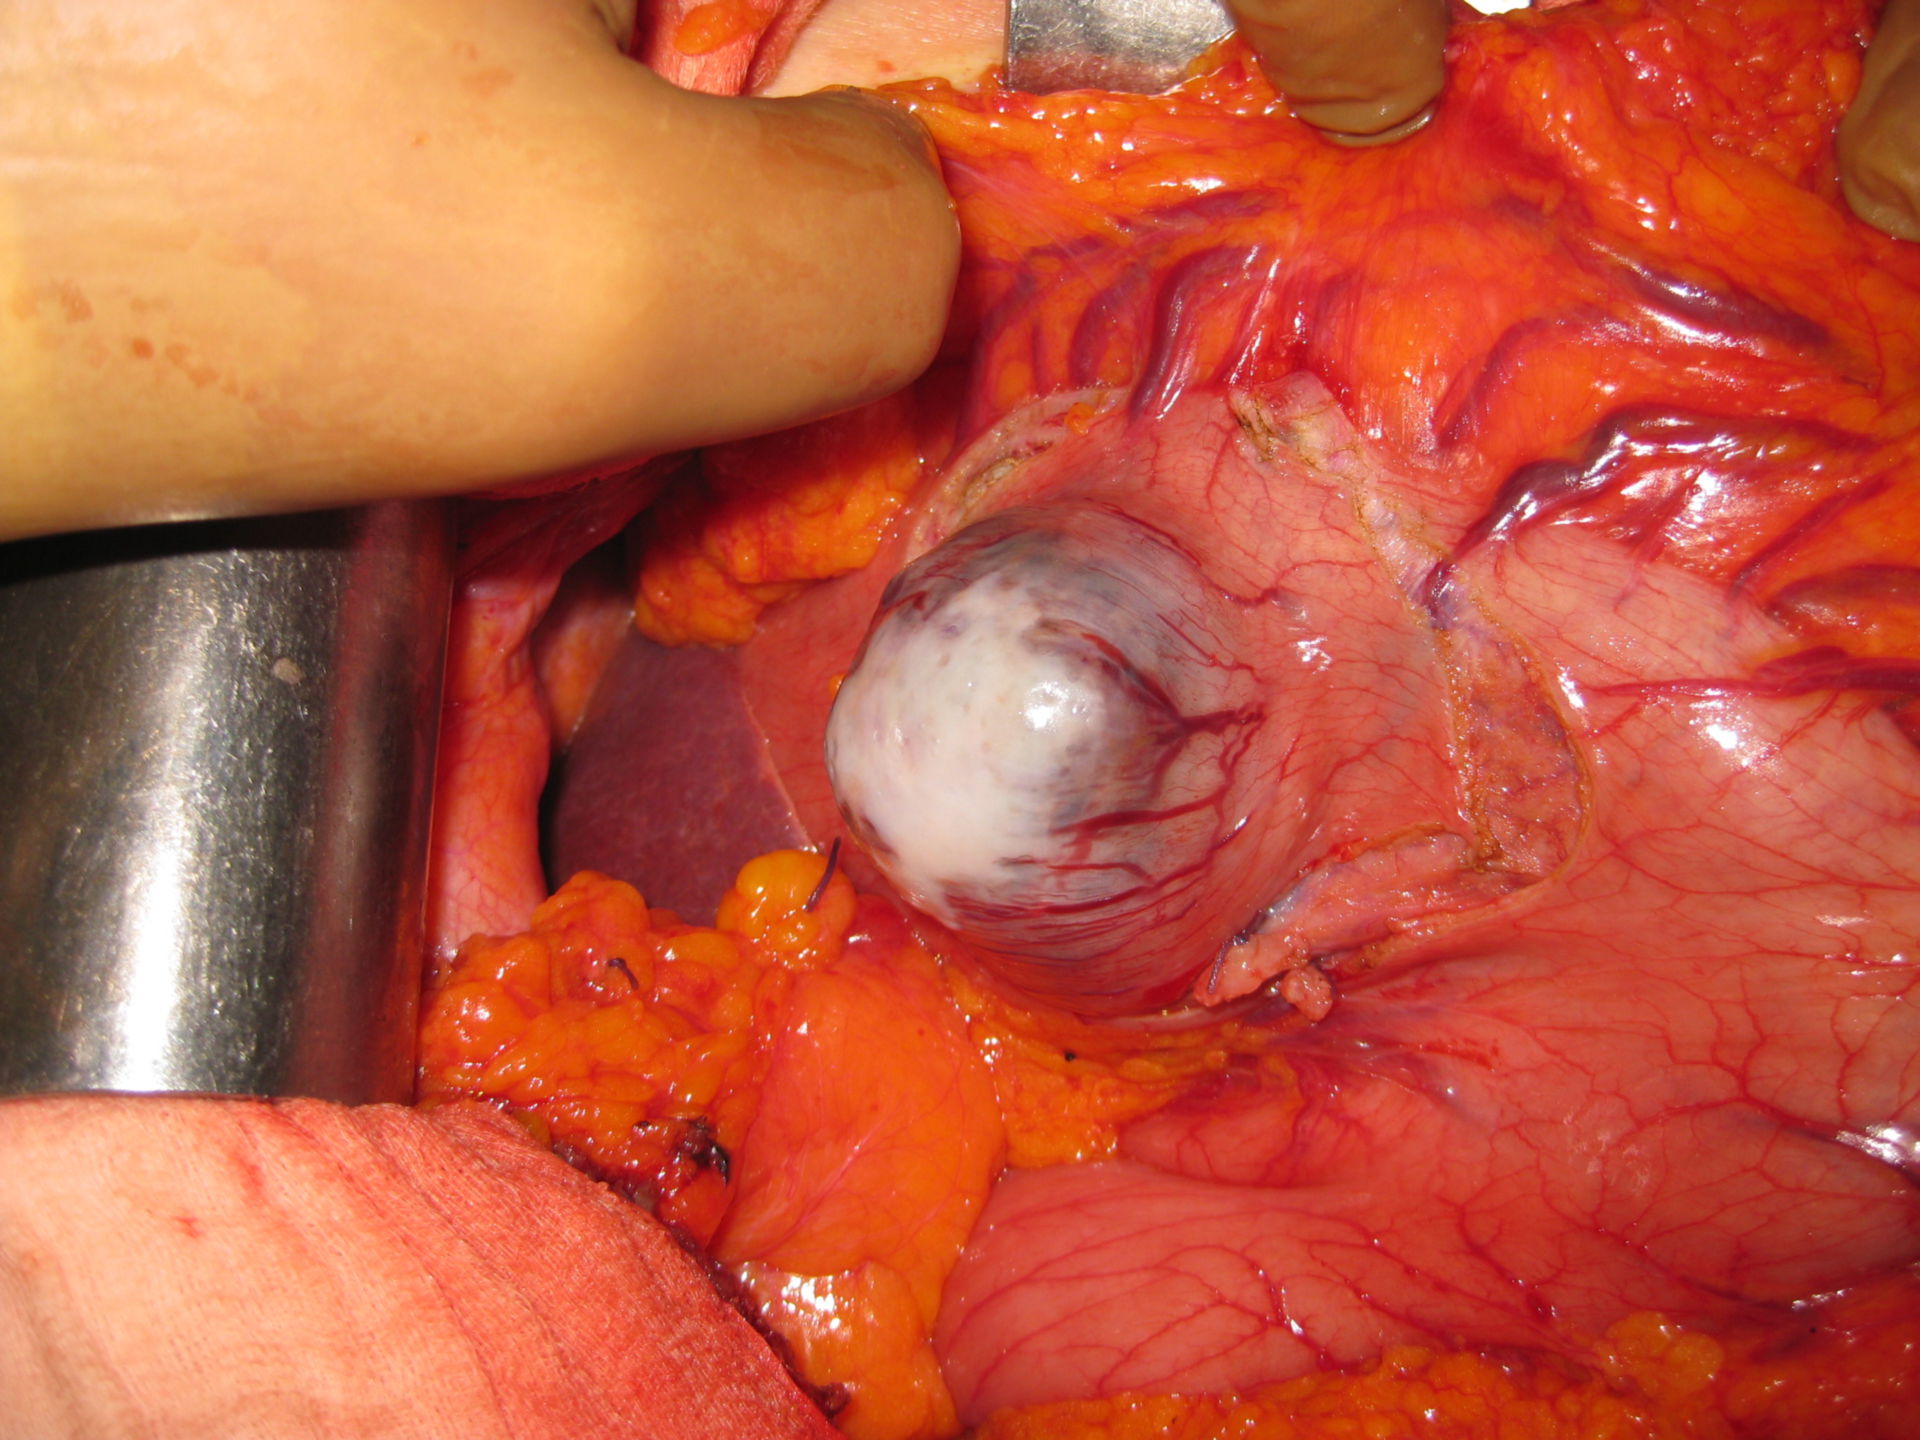 Tumor del estroma gastrointestinal en un paciente de 80 años